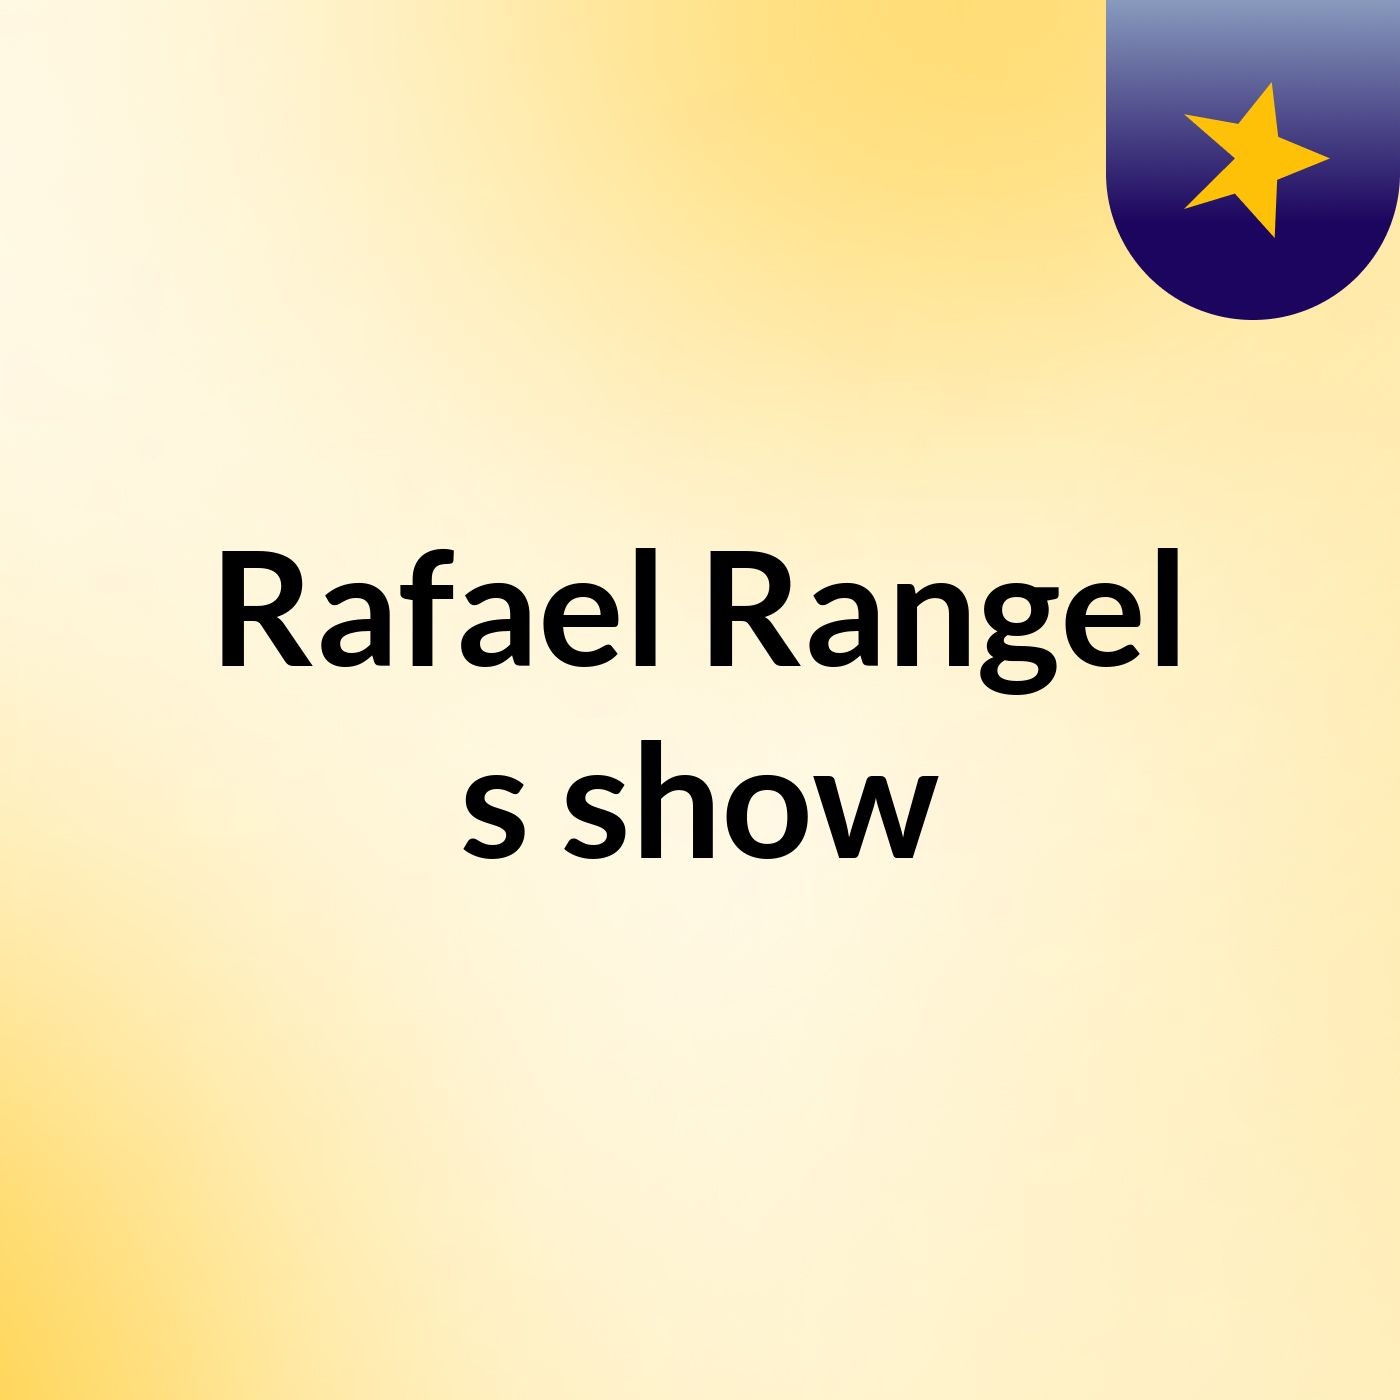 Rafael Rangel's show